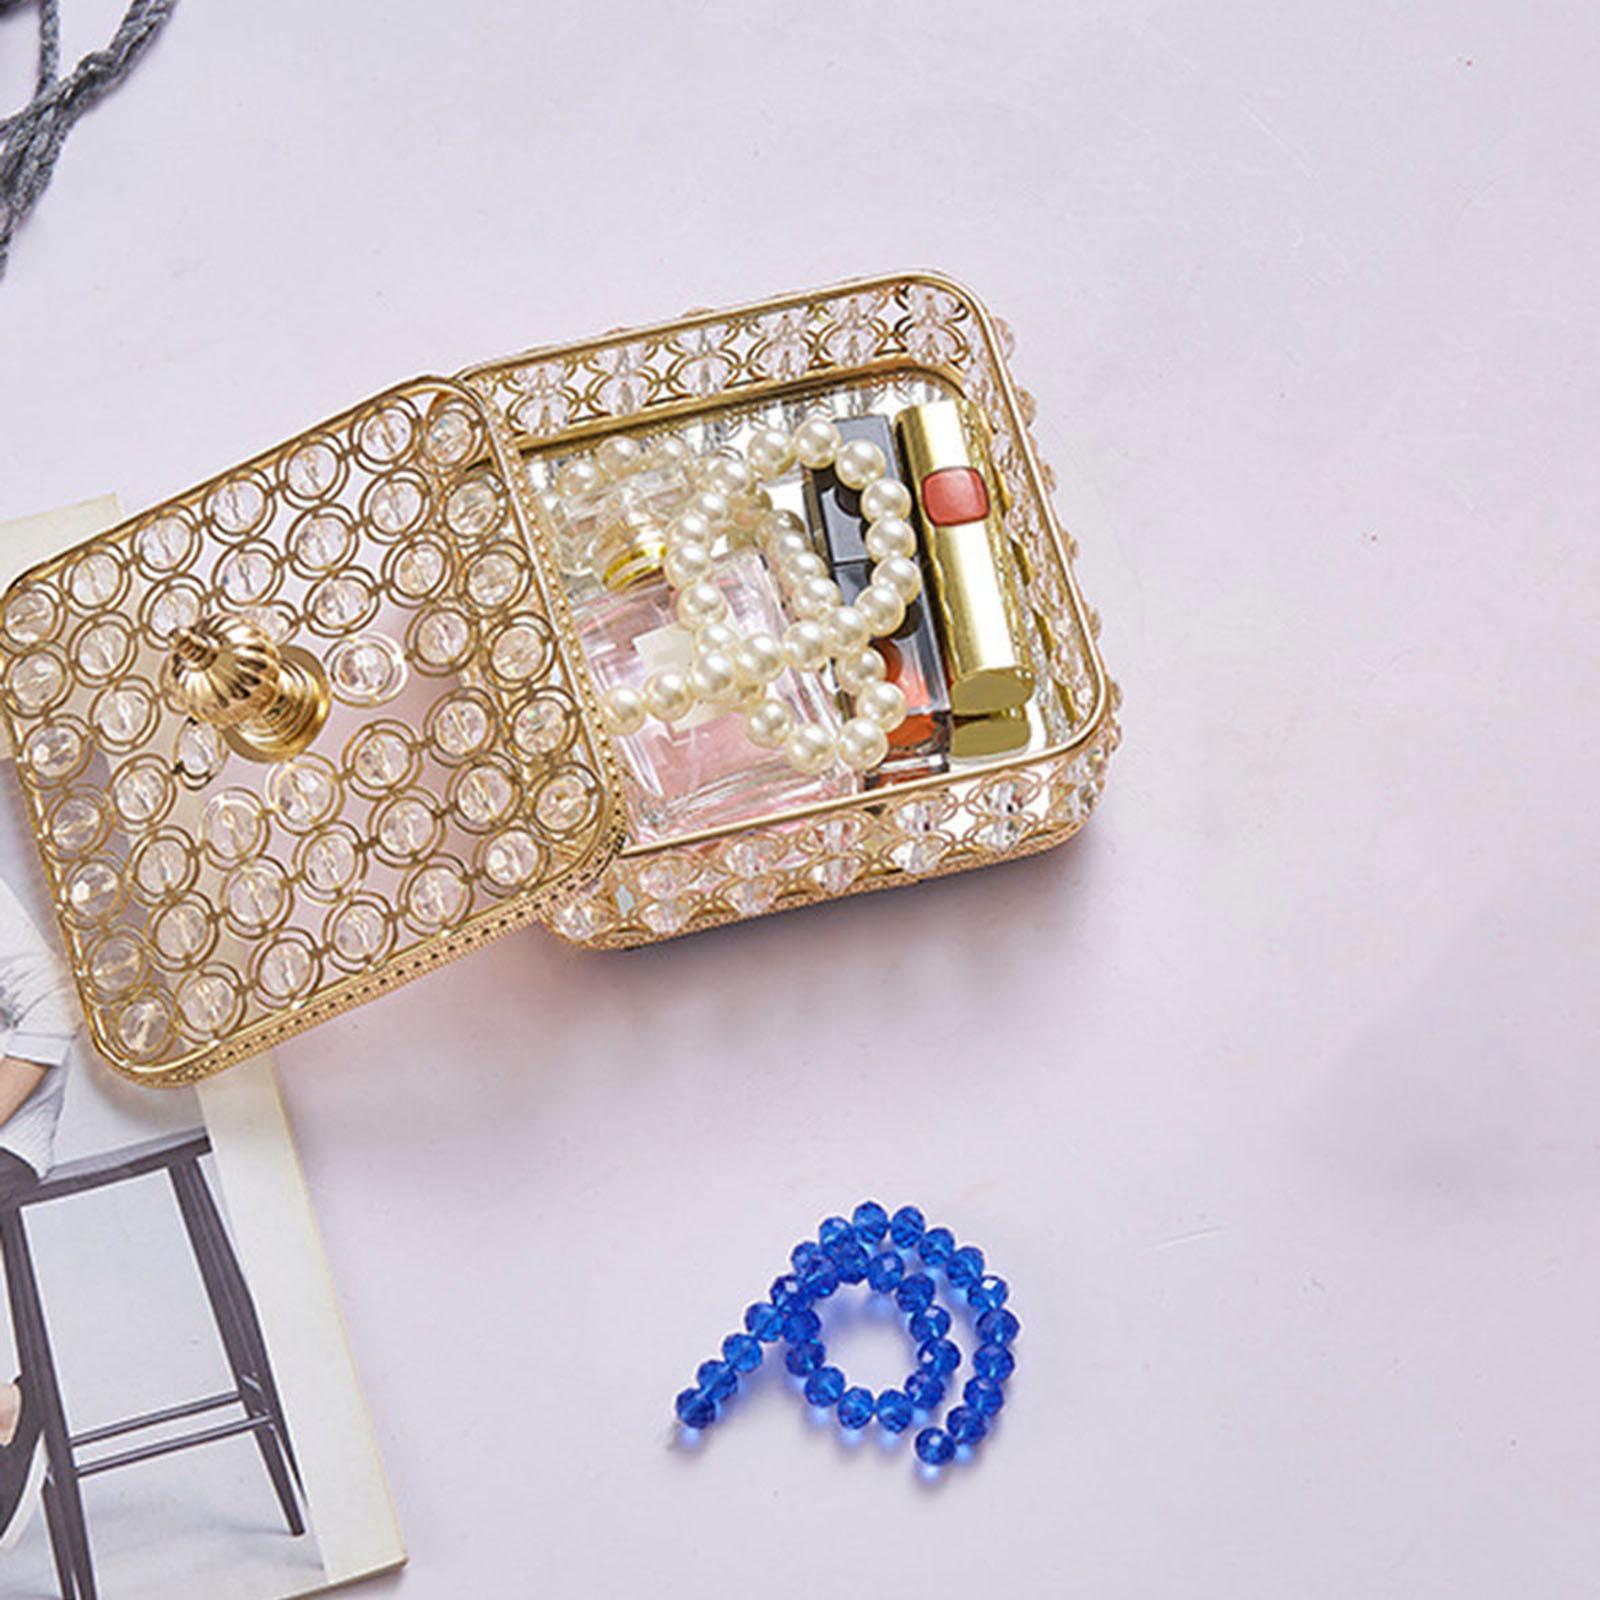 Vintage Crystal Jewelry Box Trinket Organizer Rings Earrings Wedding Large